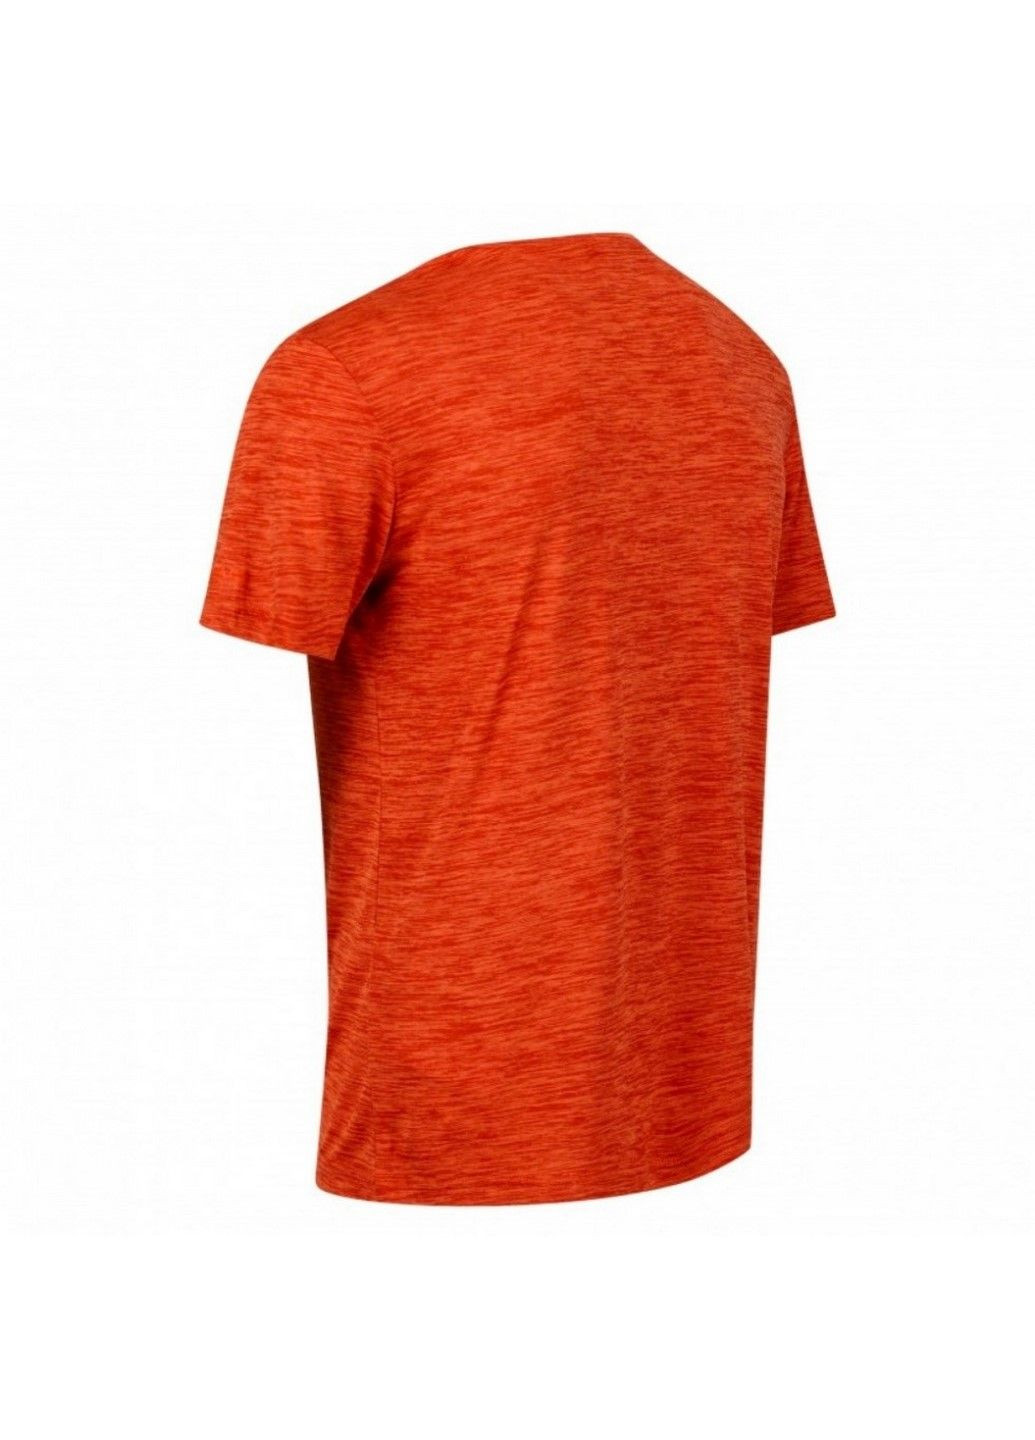 Оранжевая мужская спортивная футболка fingal edition rmt237-33l Regatta